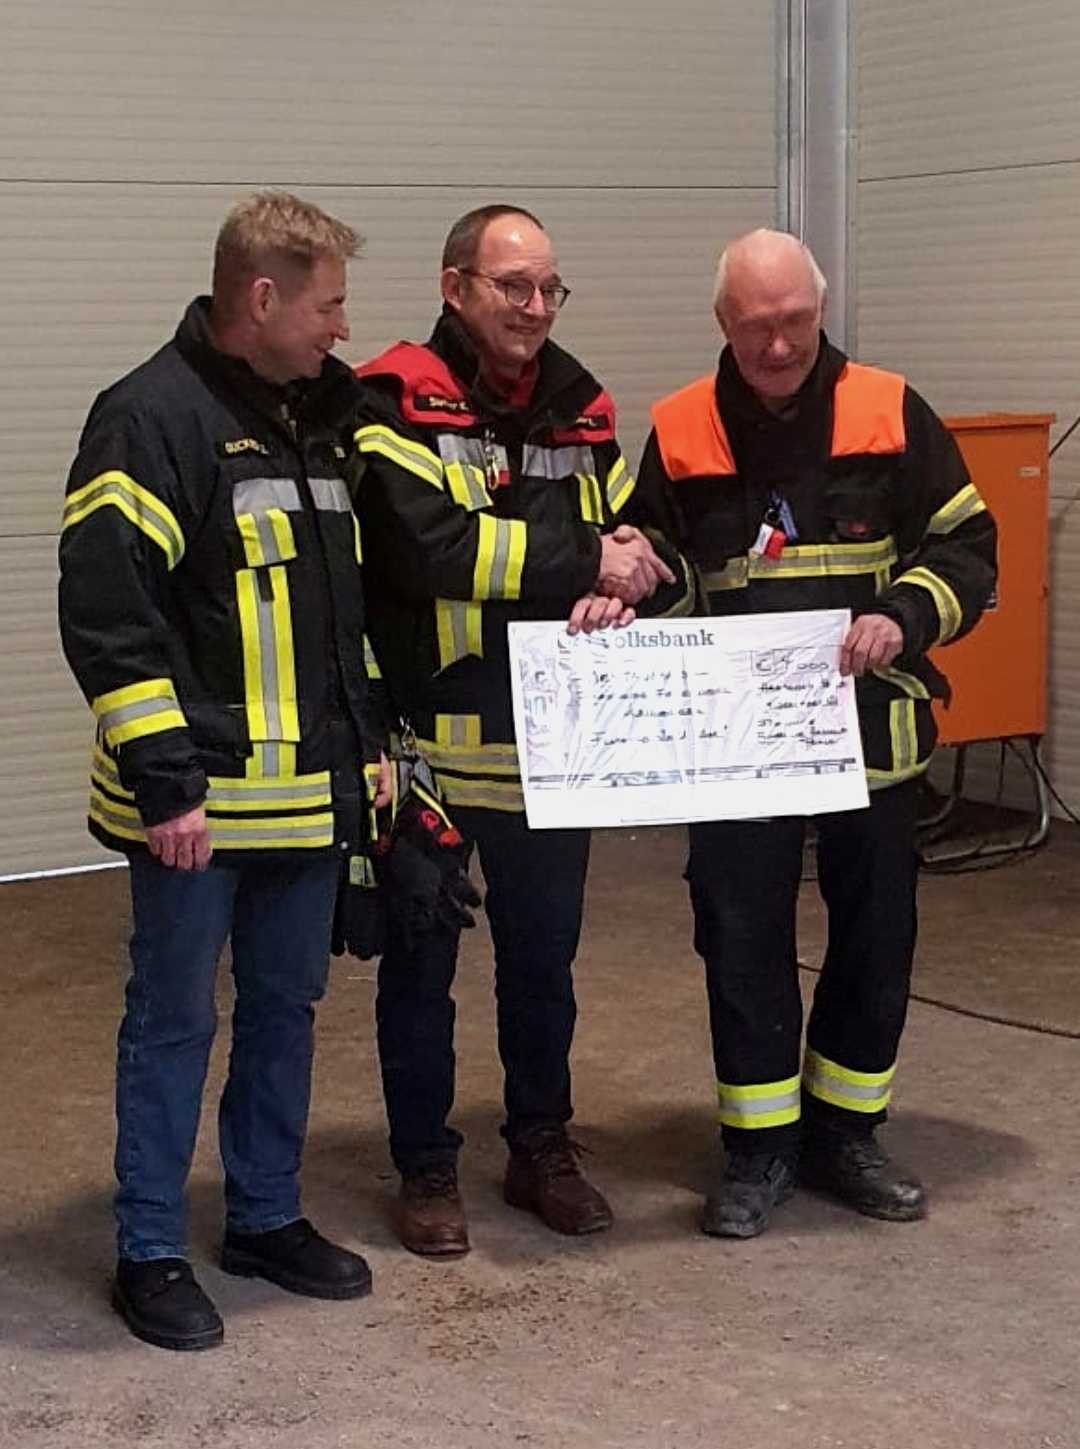 Klaus Sieber von der Feuerwehr Haßloch/Pfalz schrieb: „Nachdem wir in Kreuzberg eingesetzt waren, hat sich der Kontakt zur Feuerwehr vor Ort erhalten. Kurz vor Weihnachten 2021 konnten wir einen Spendenscheck von 4.000 Euro und Küchengeräte an die Feuerwehr Kreuzberg übergeben.“